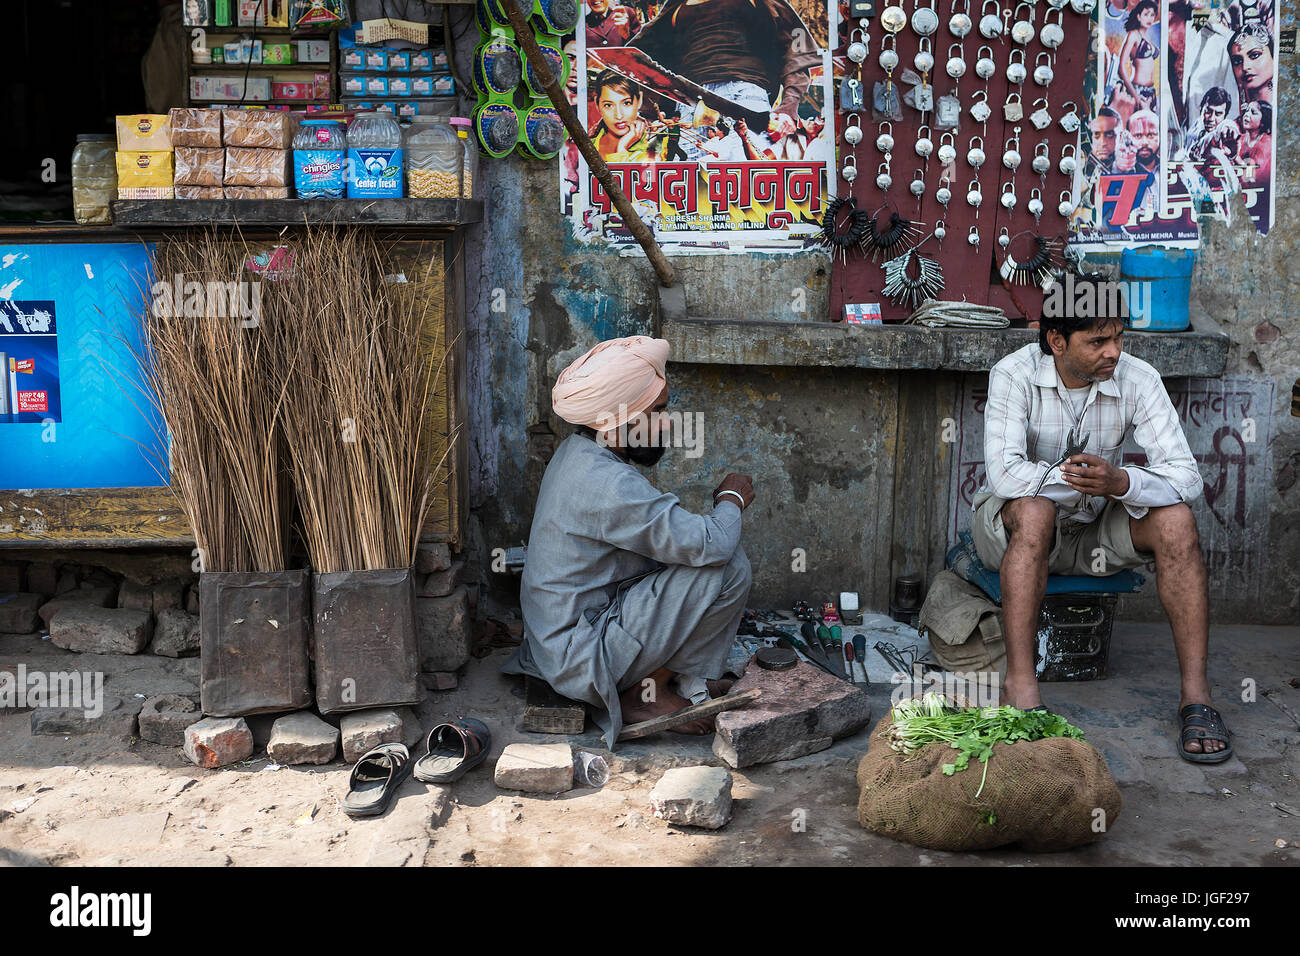 Deux serruriers Indiens attendent assis au bord de la route avec leurs outils pour tailler des clés et une sélection de cadenas, près d'une rangée de boutiques Banque D'Images